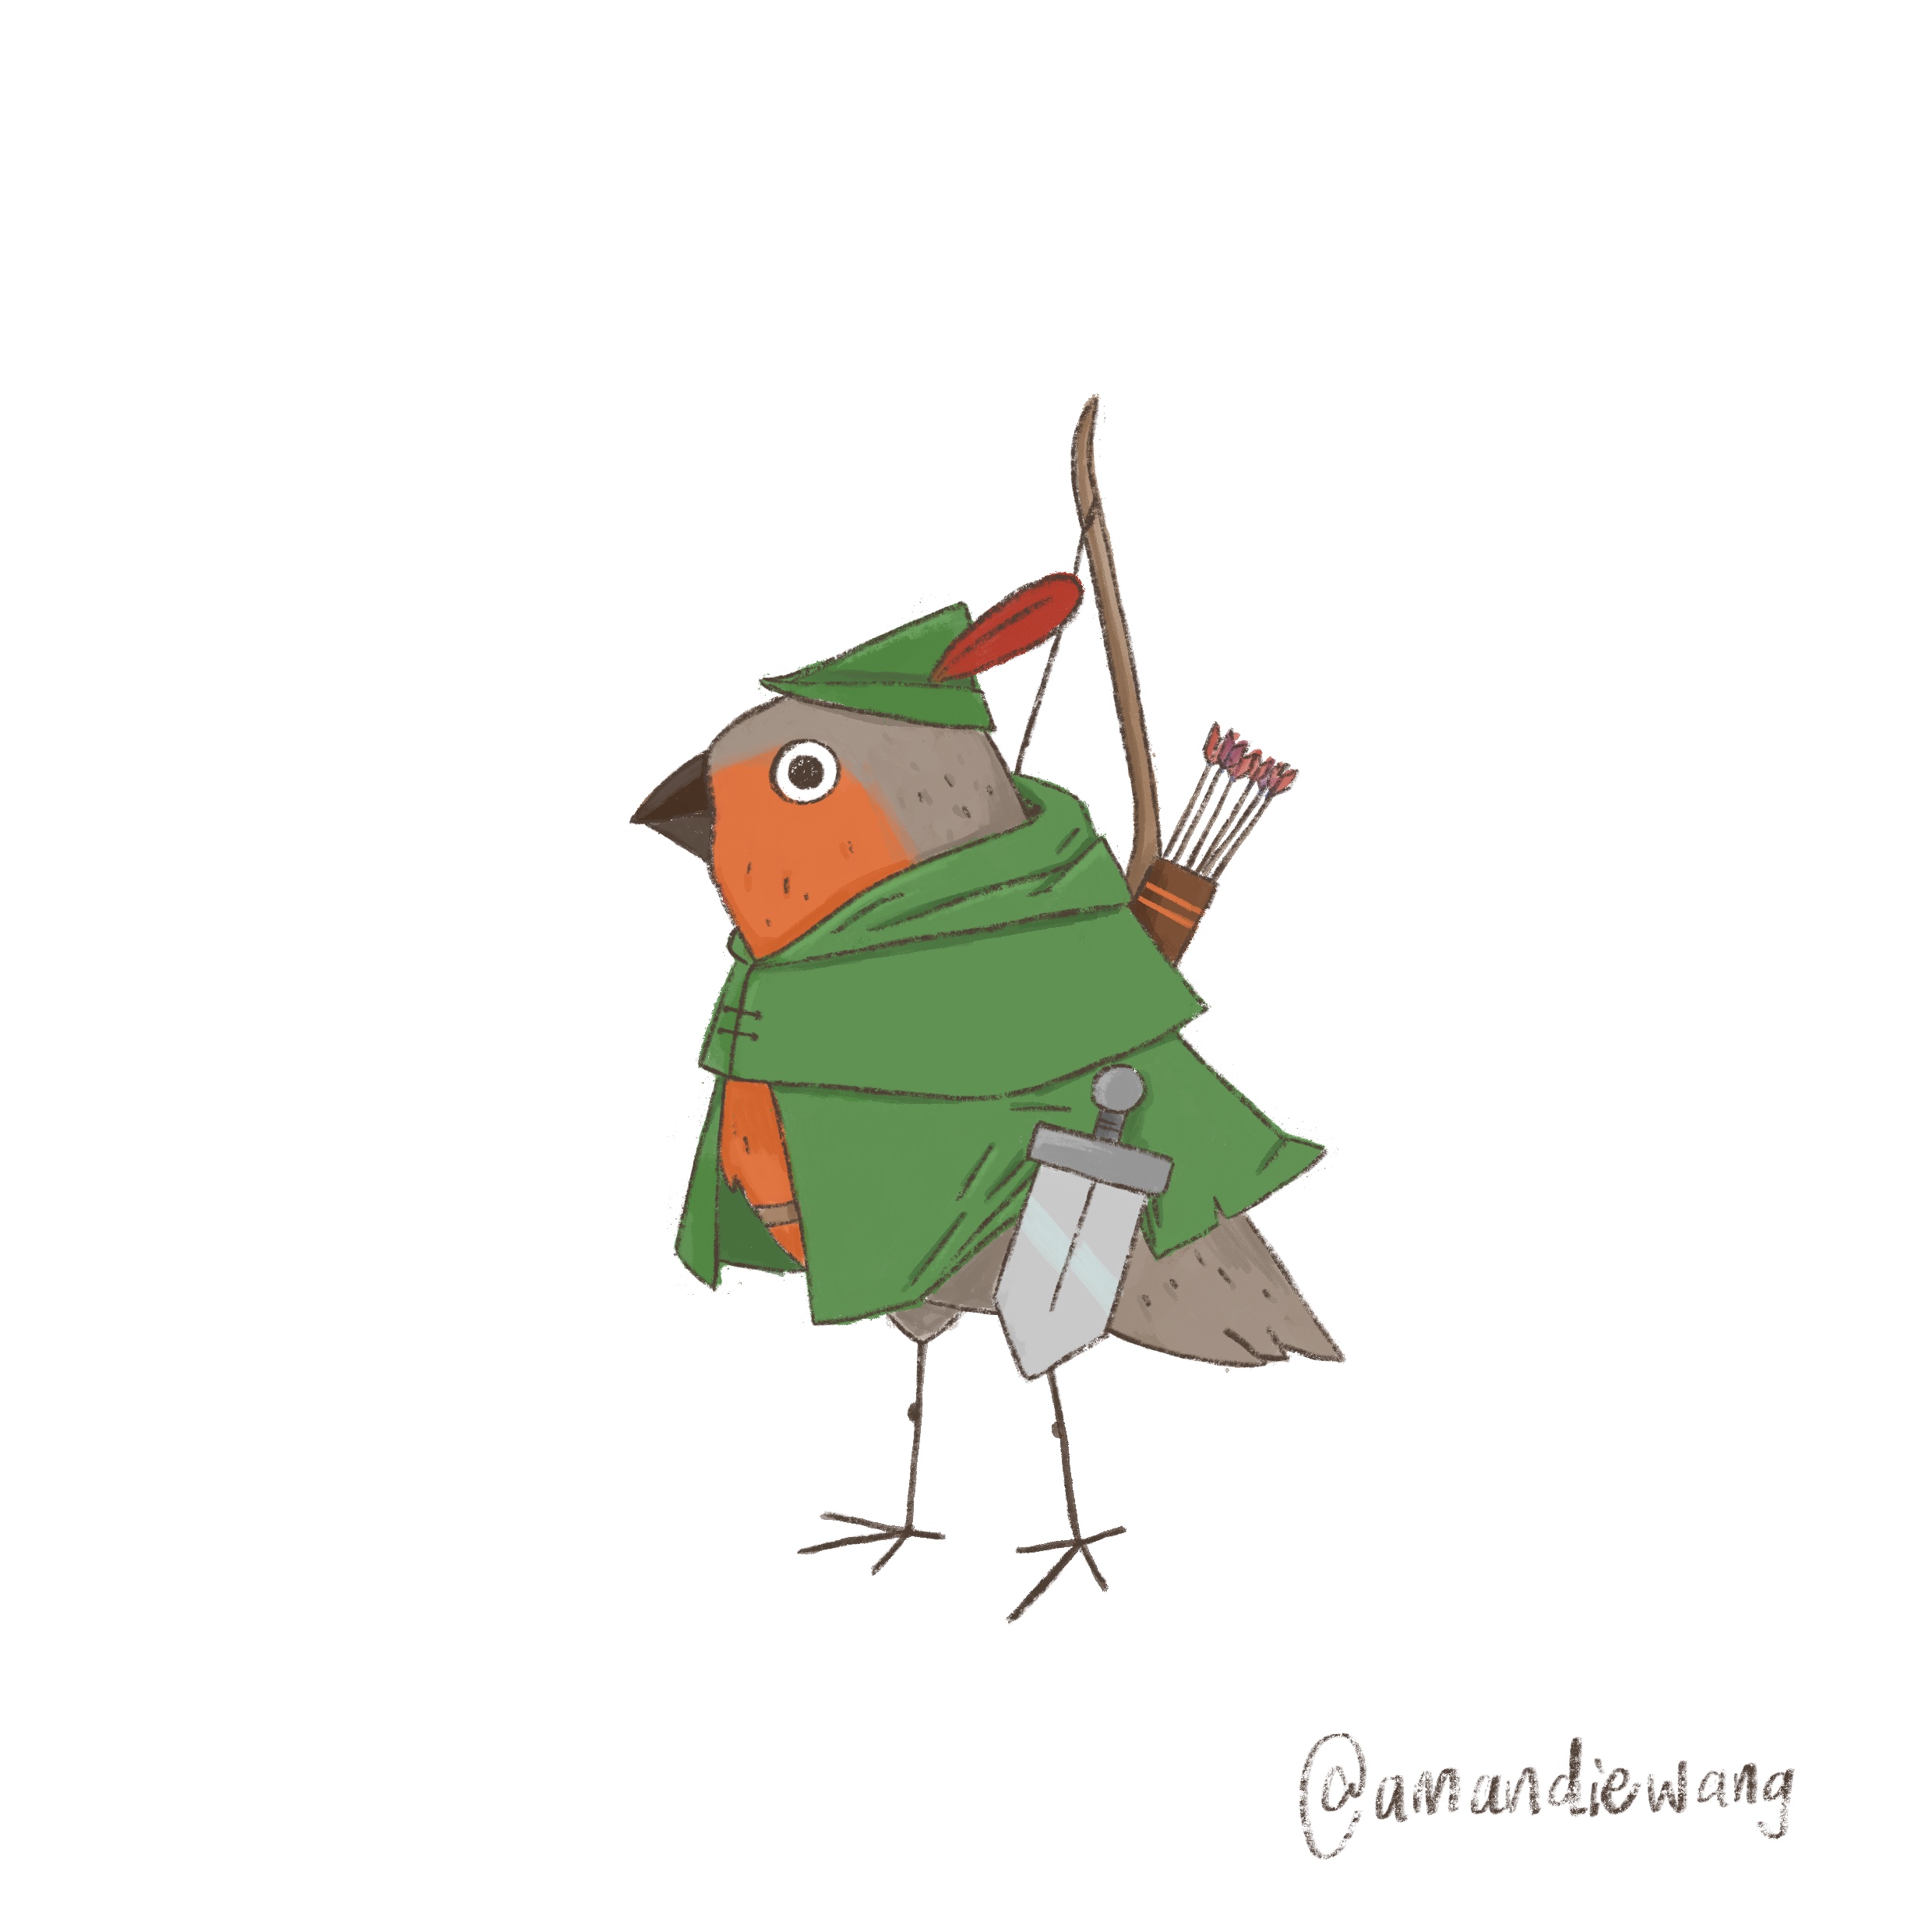 Robin Hood as a European Robin